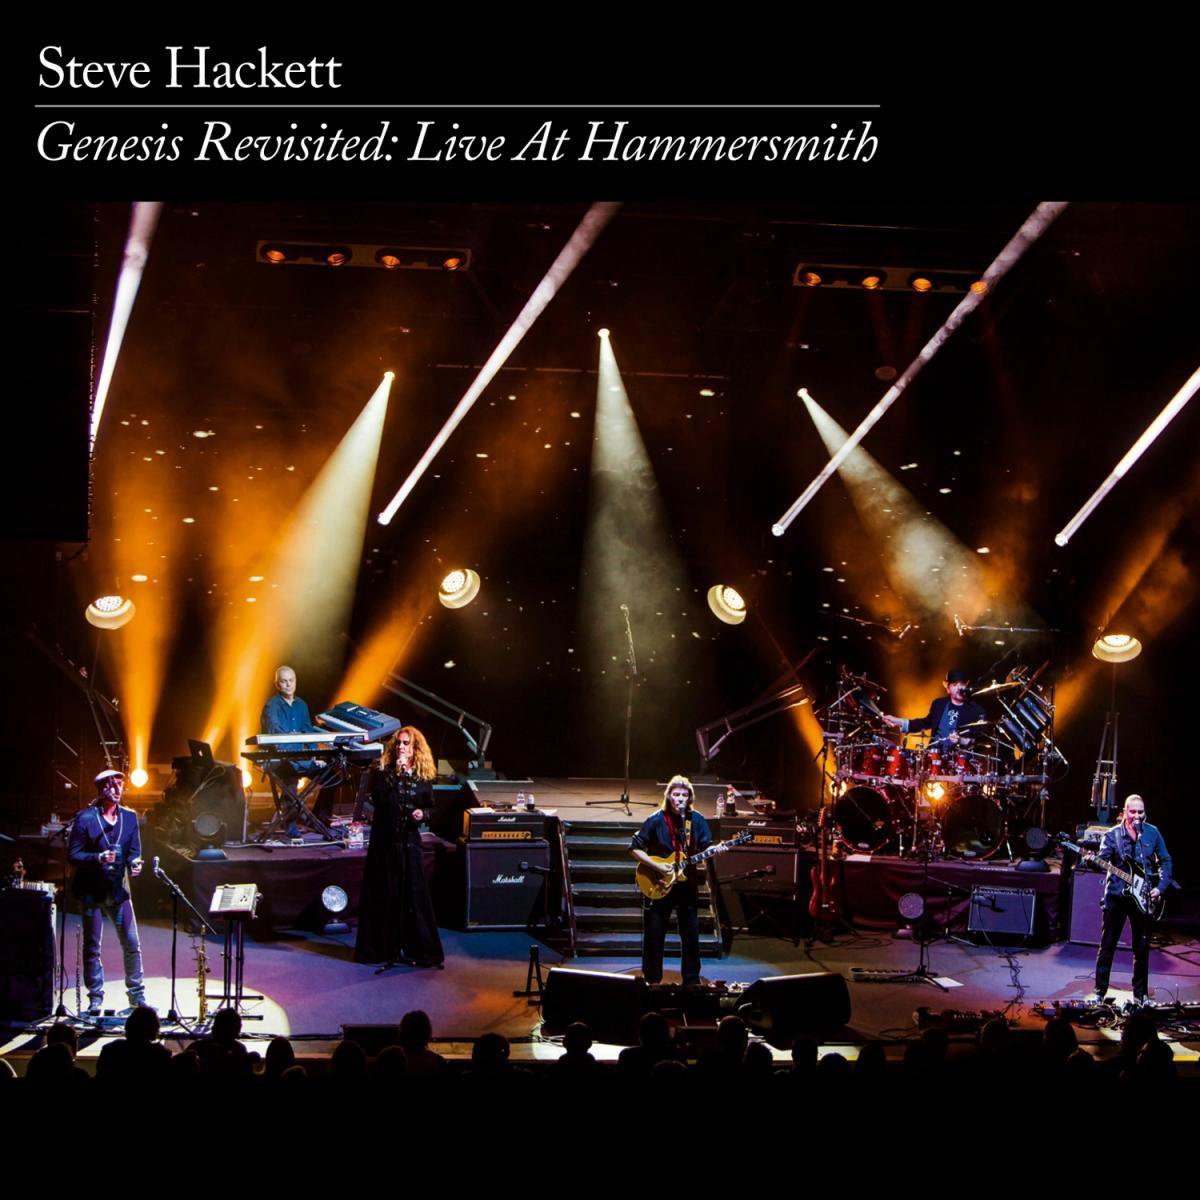 Steve Hackett - Genesis Revisited In Hammersmith 2013 (DVD en CD)